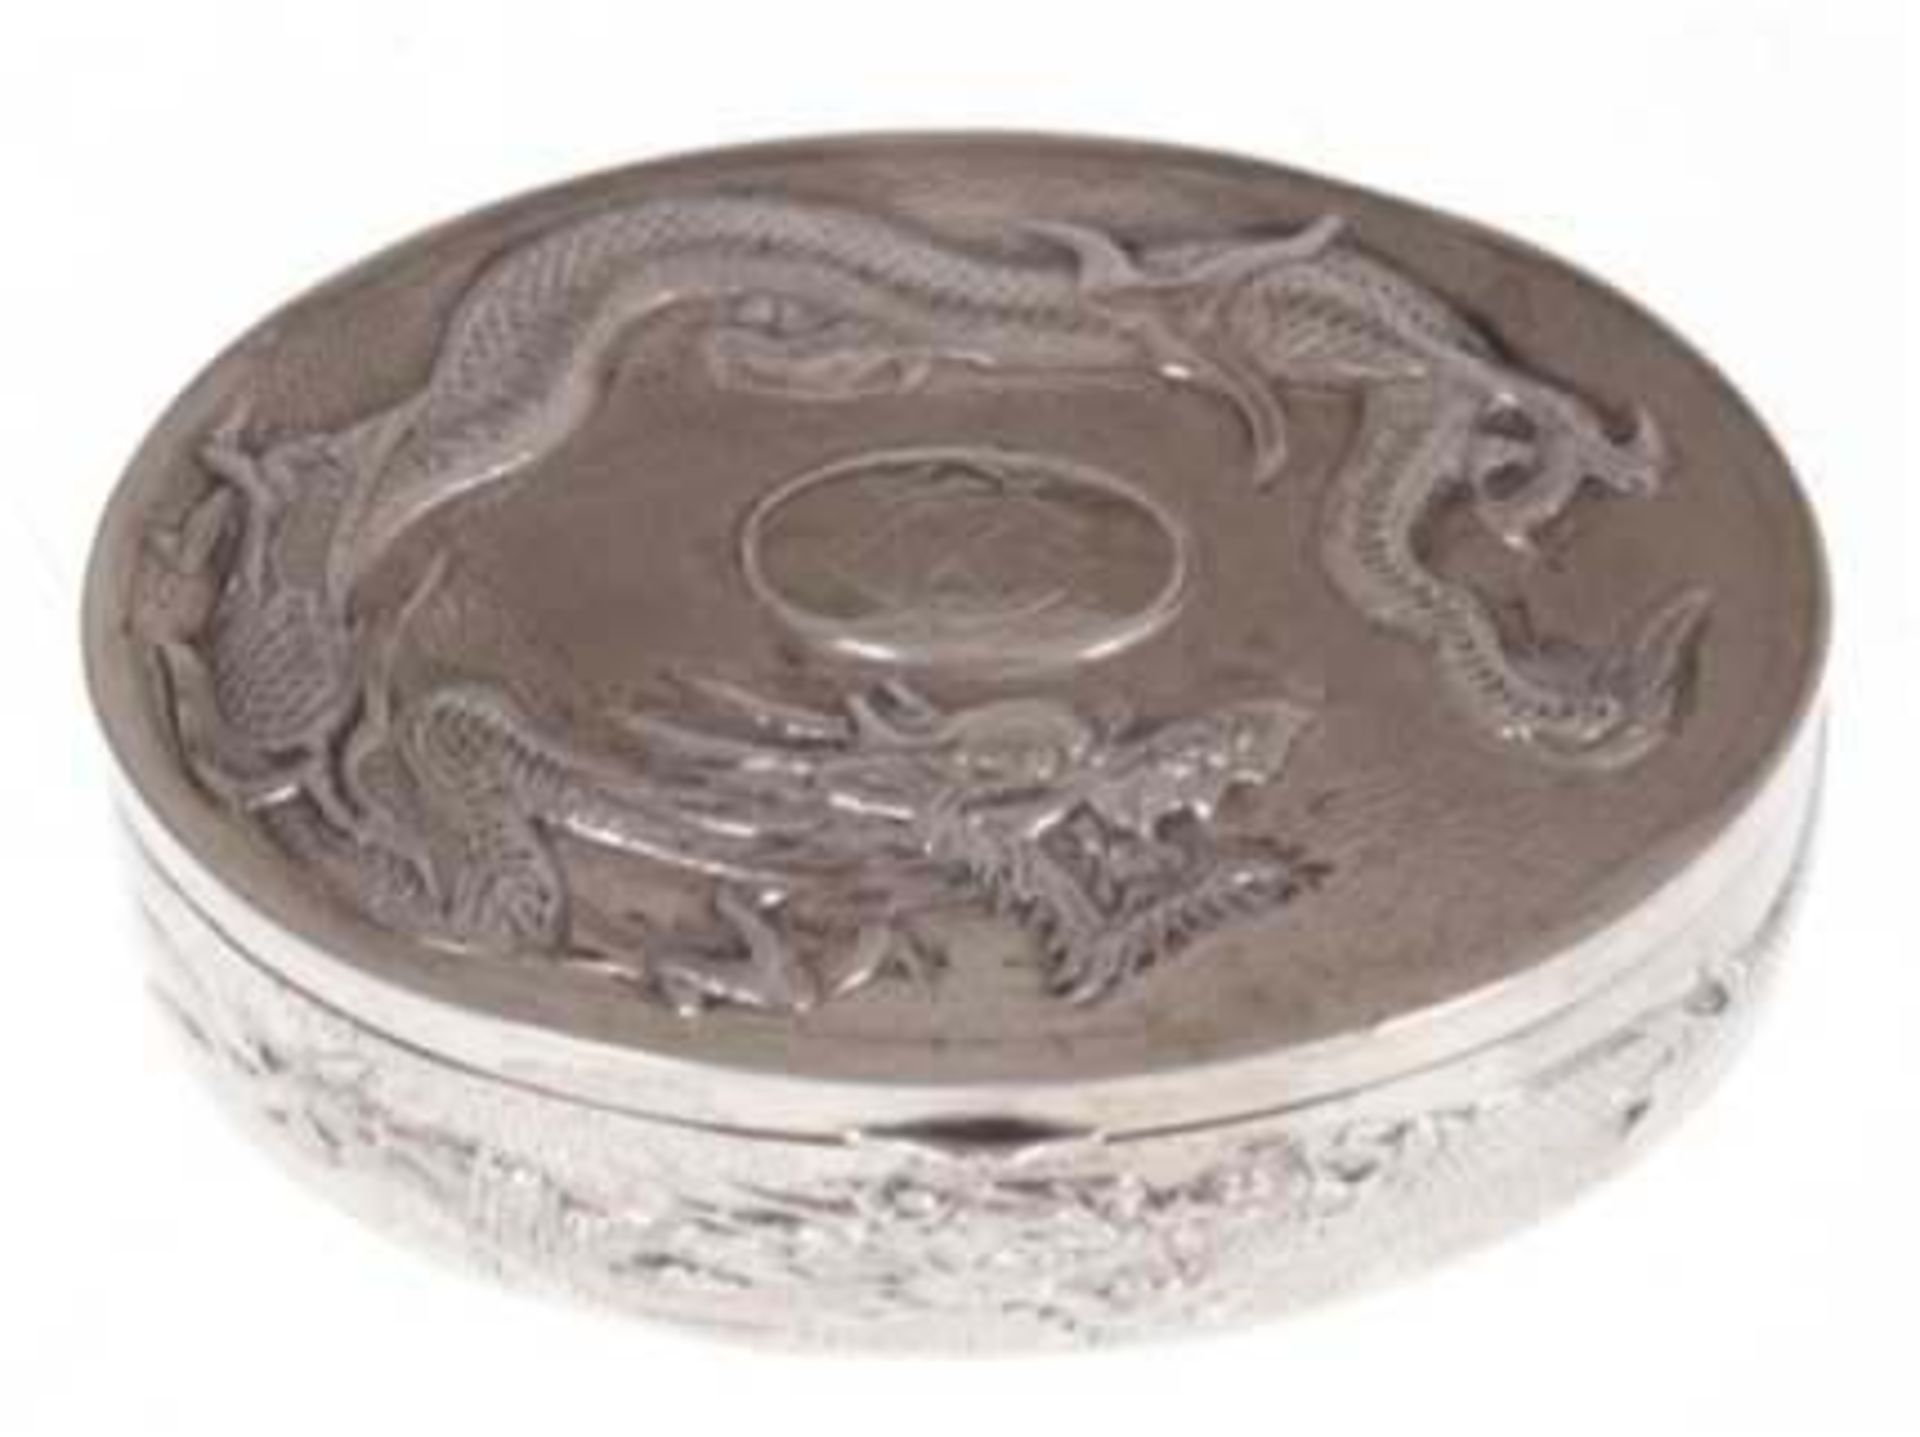 Schmuckdöschen, China um 1920, Silber, geprüft, 71 g, ovale Form mit reliefiertem Drachendekor, in